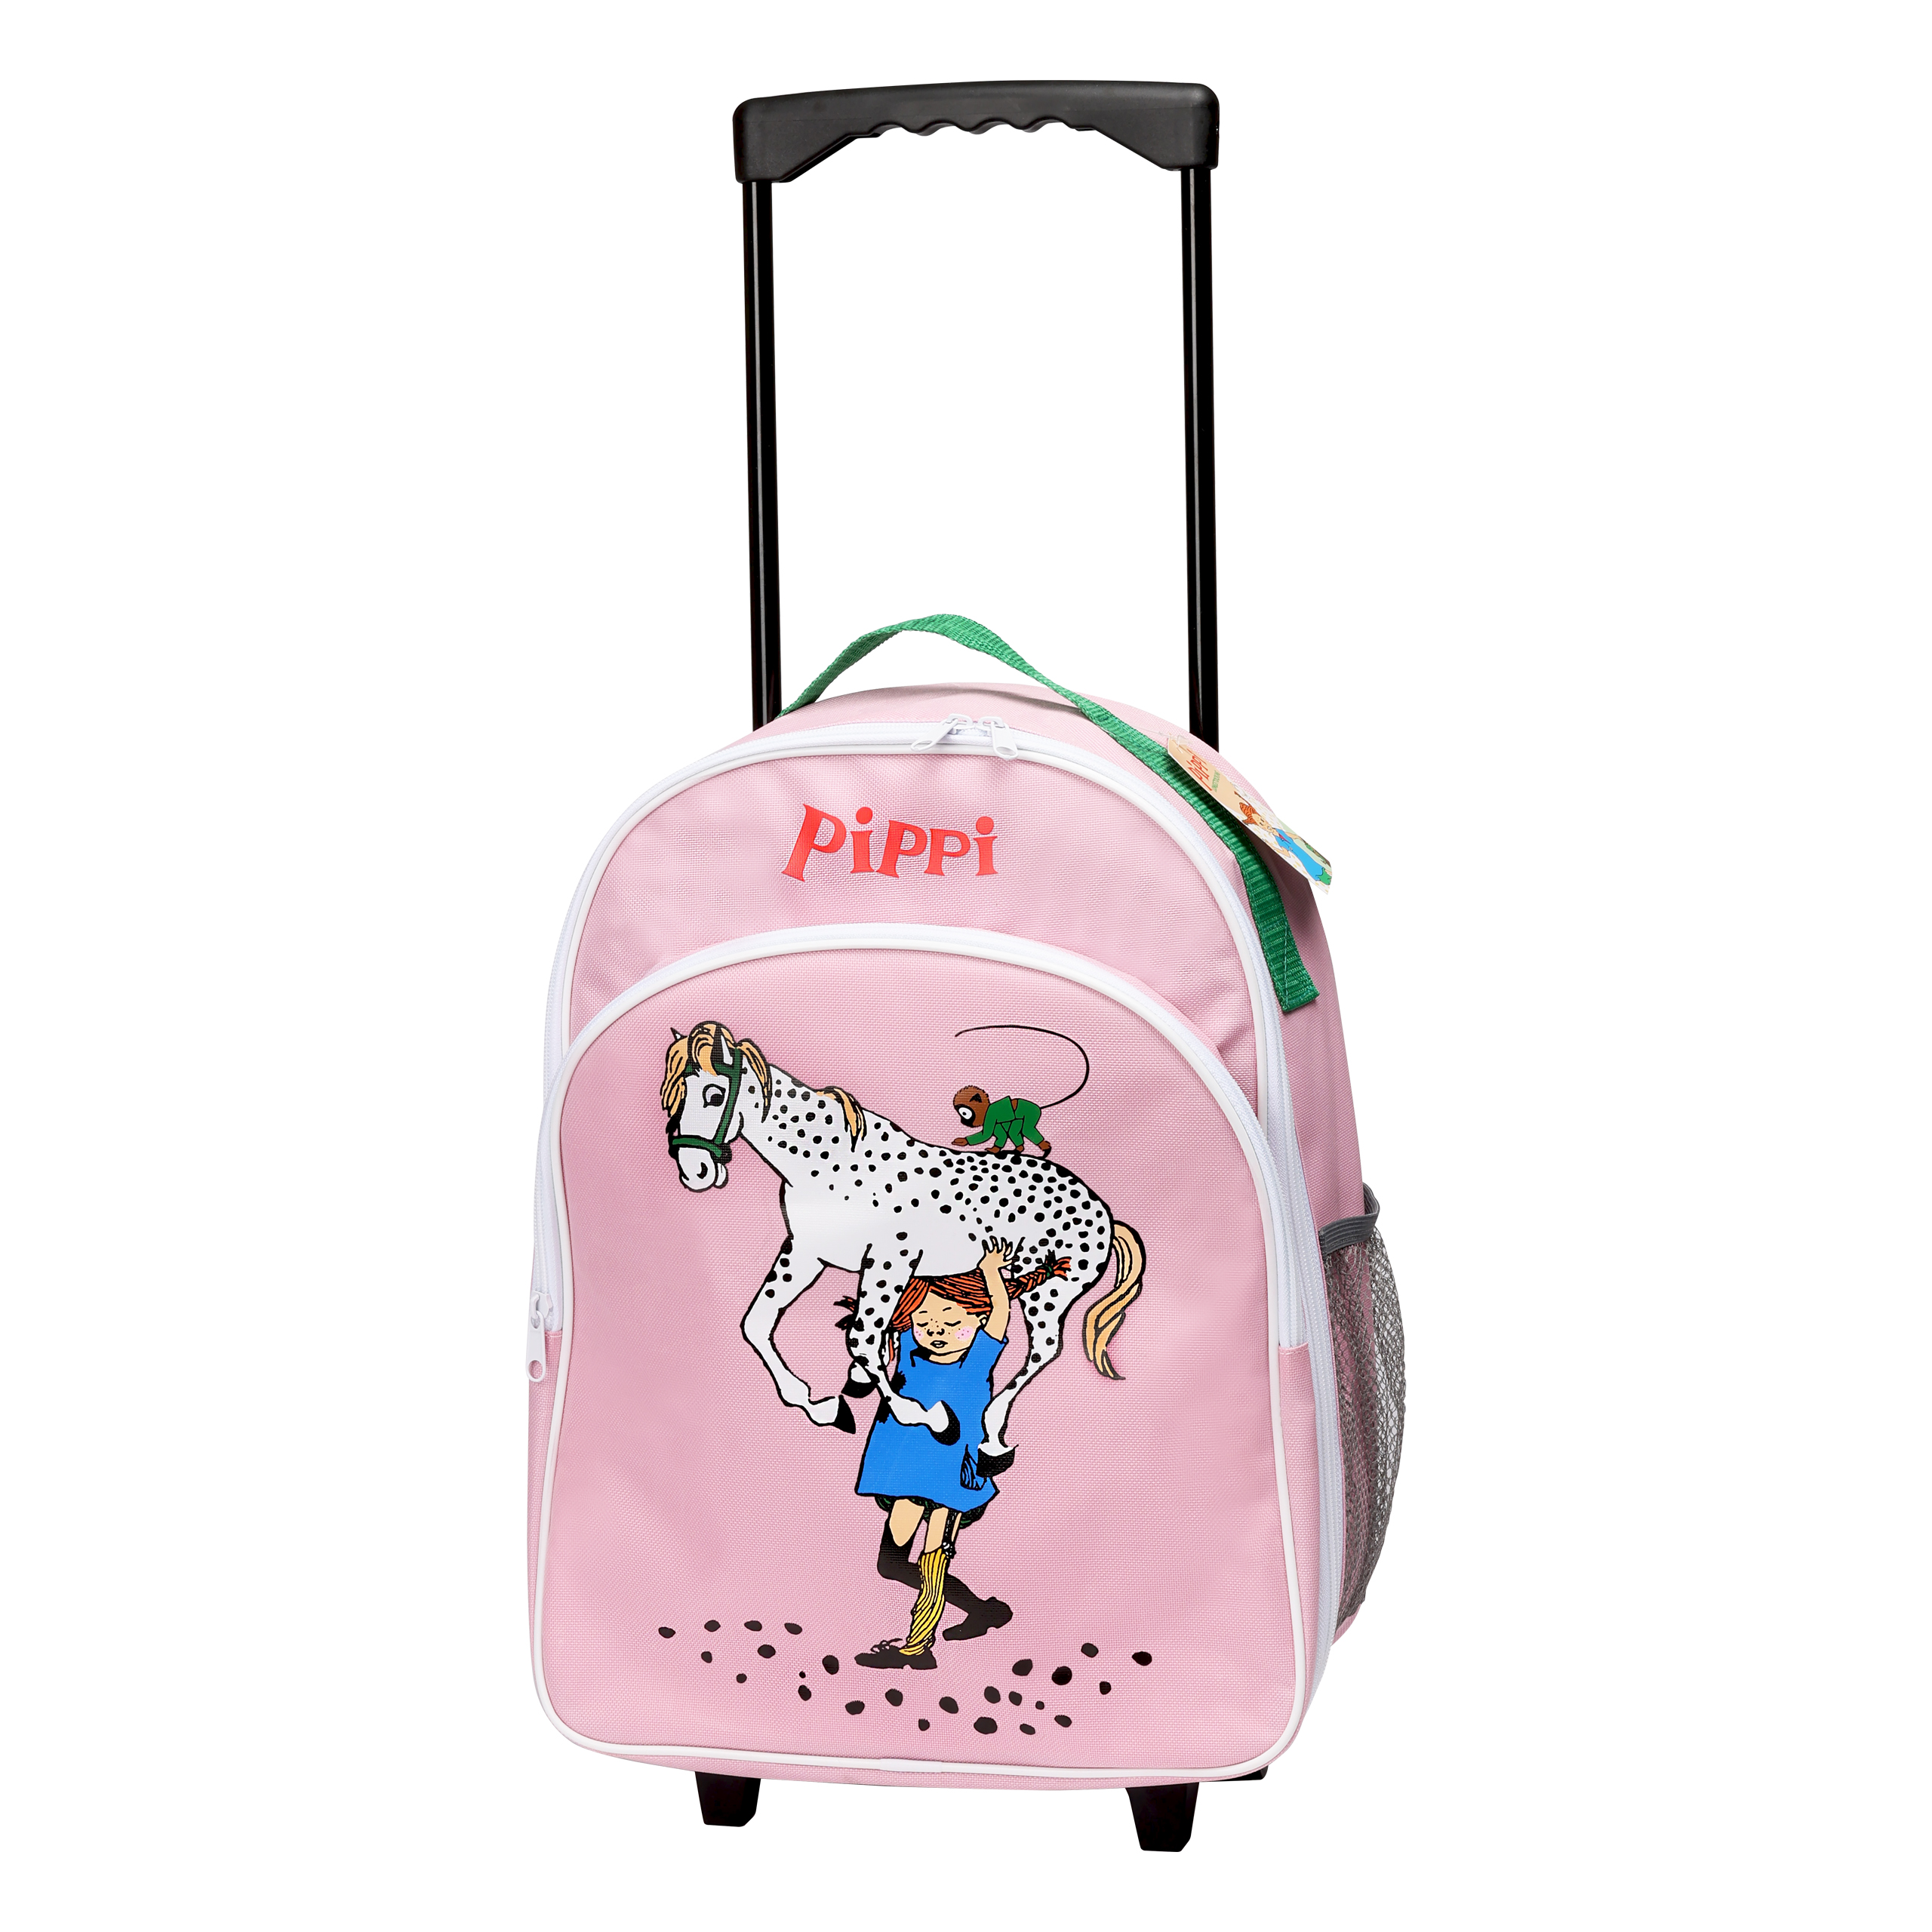 Pippi pippi børnetaske kuffert lyserød